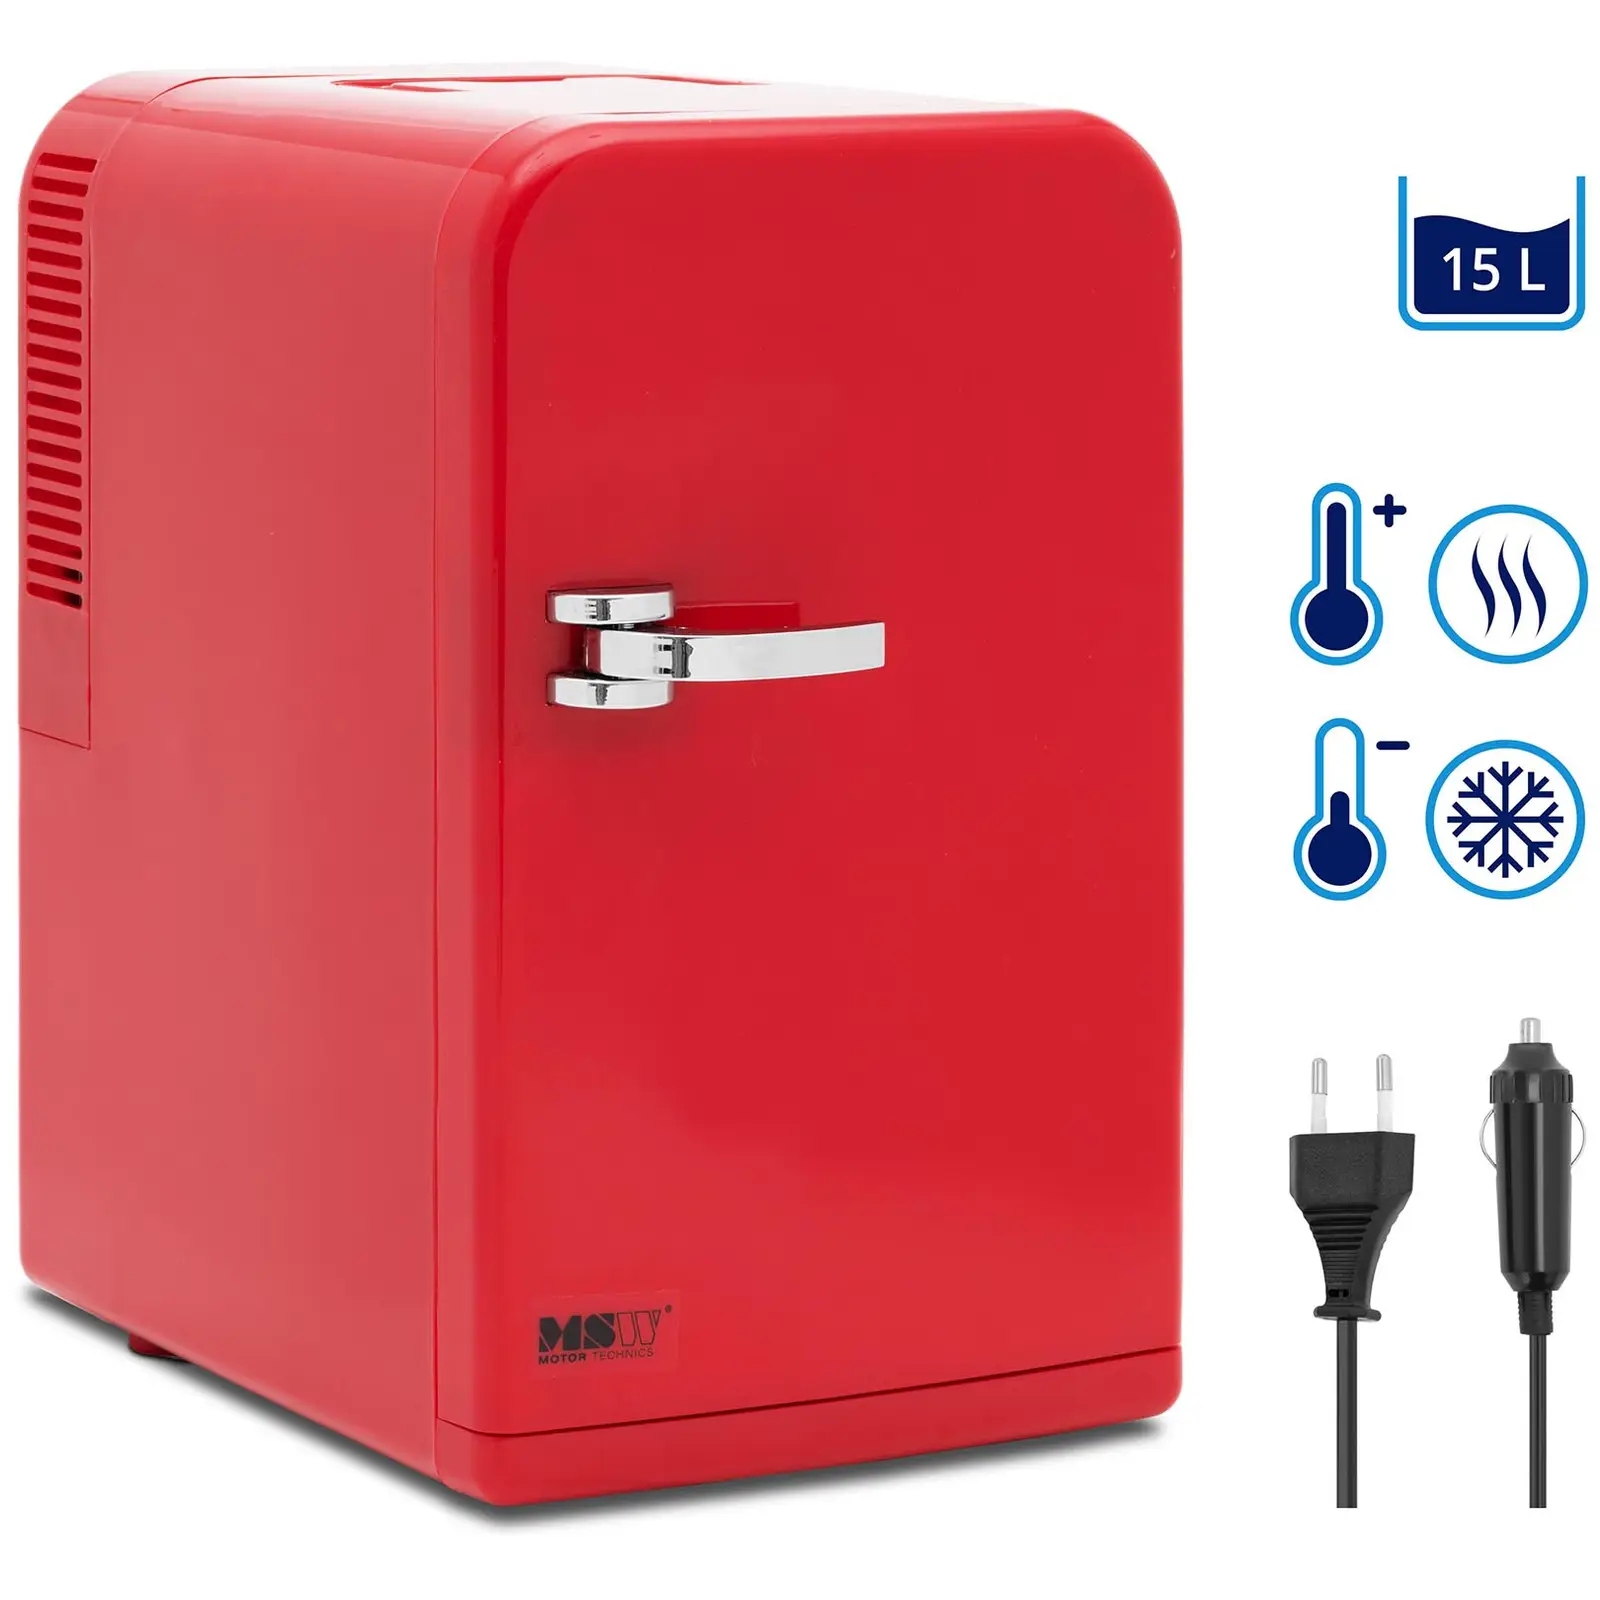 B-zboží Mini chladnička 12 V / 230 V - zařízení 2 v 1 s funkcí ohřevu - 15 l - červená